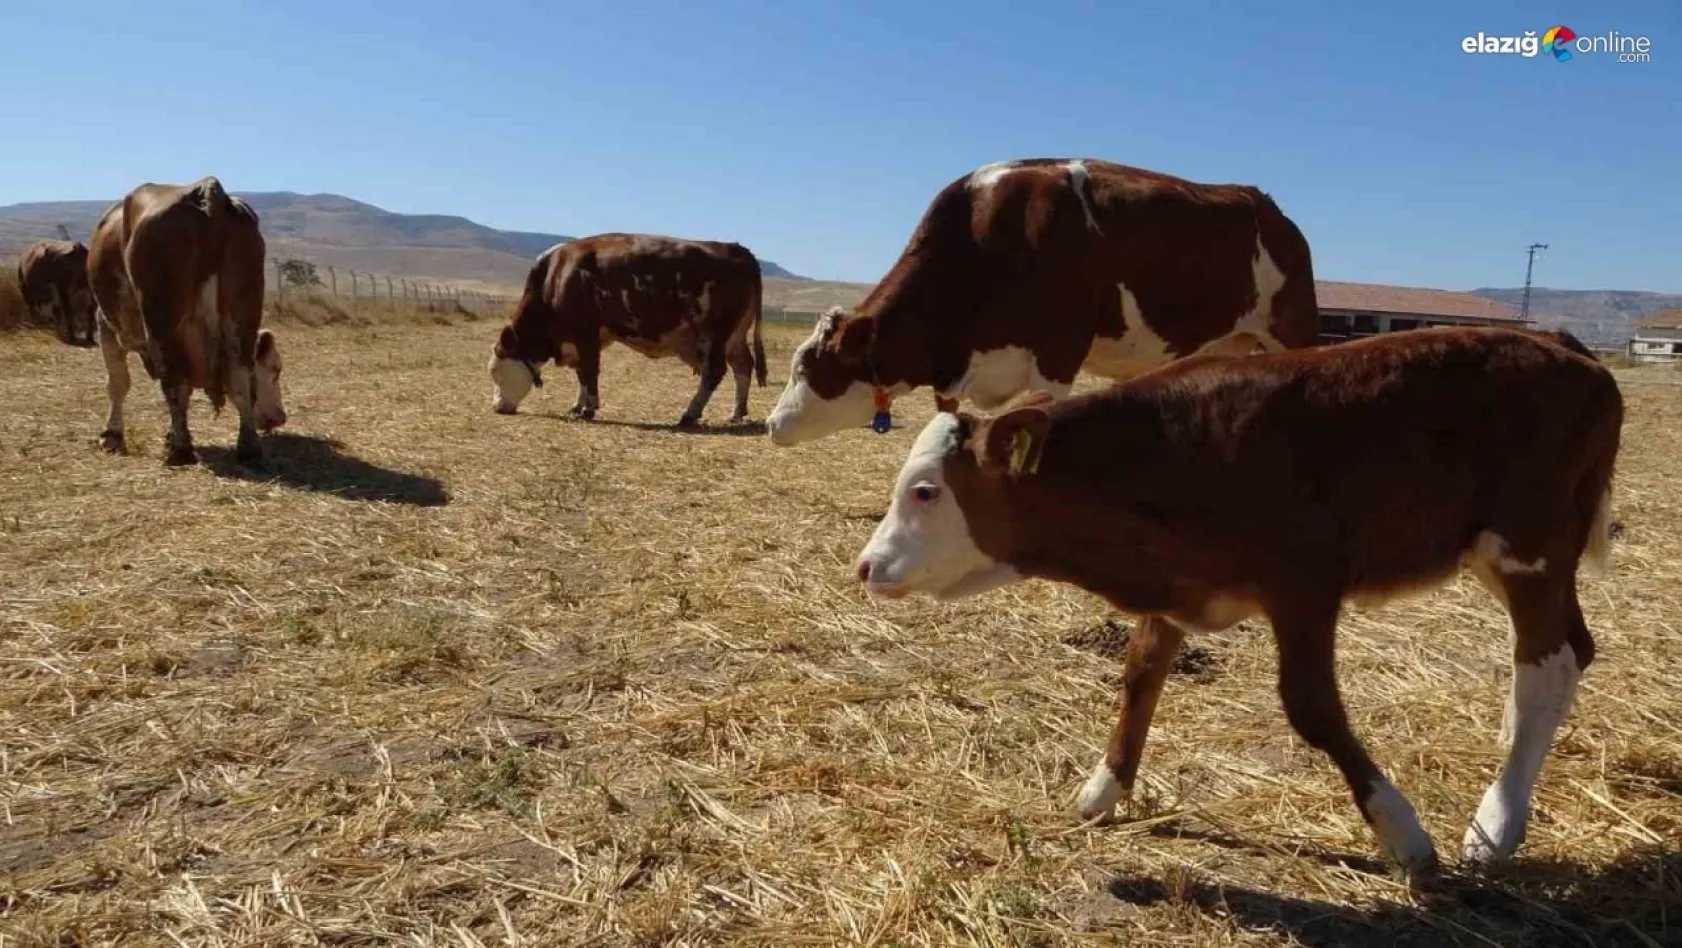 Sultansuyu'nda süt sığırcılığı üretimi arttırılıyor